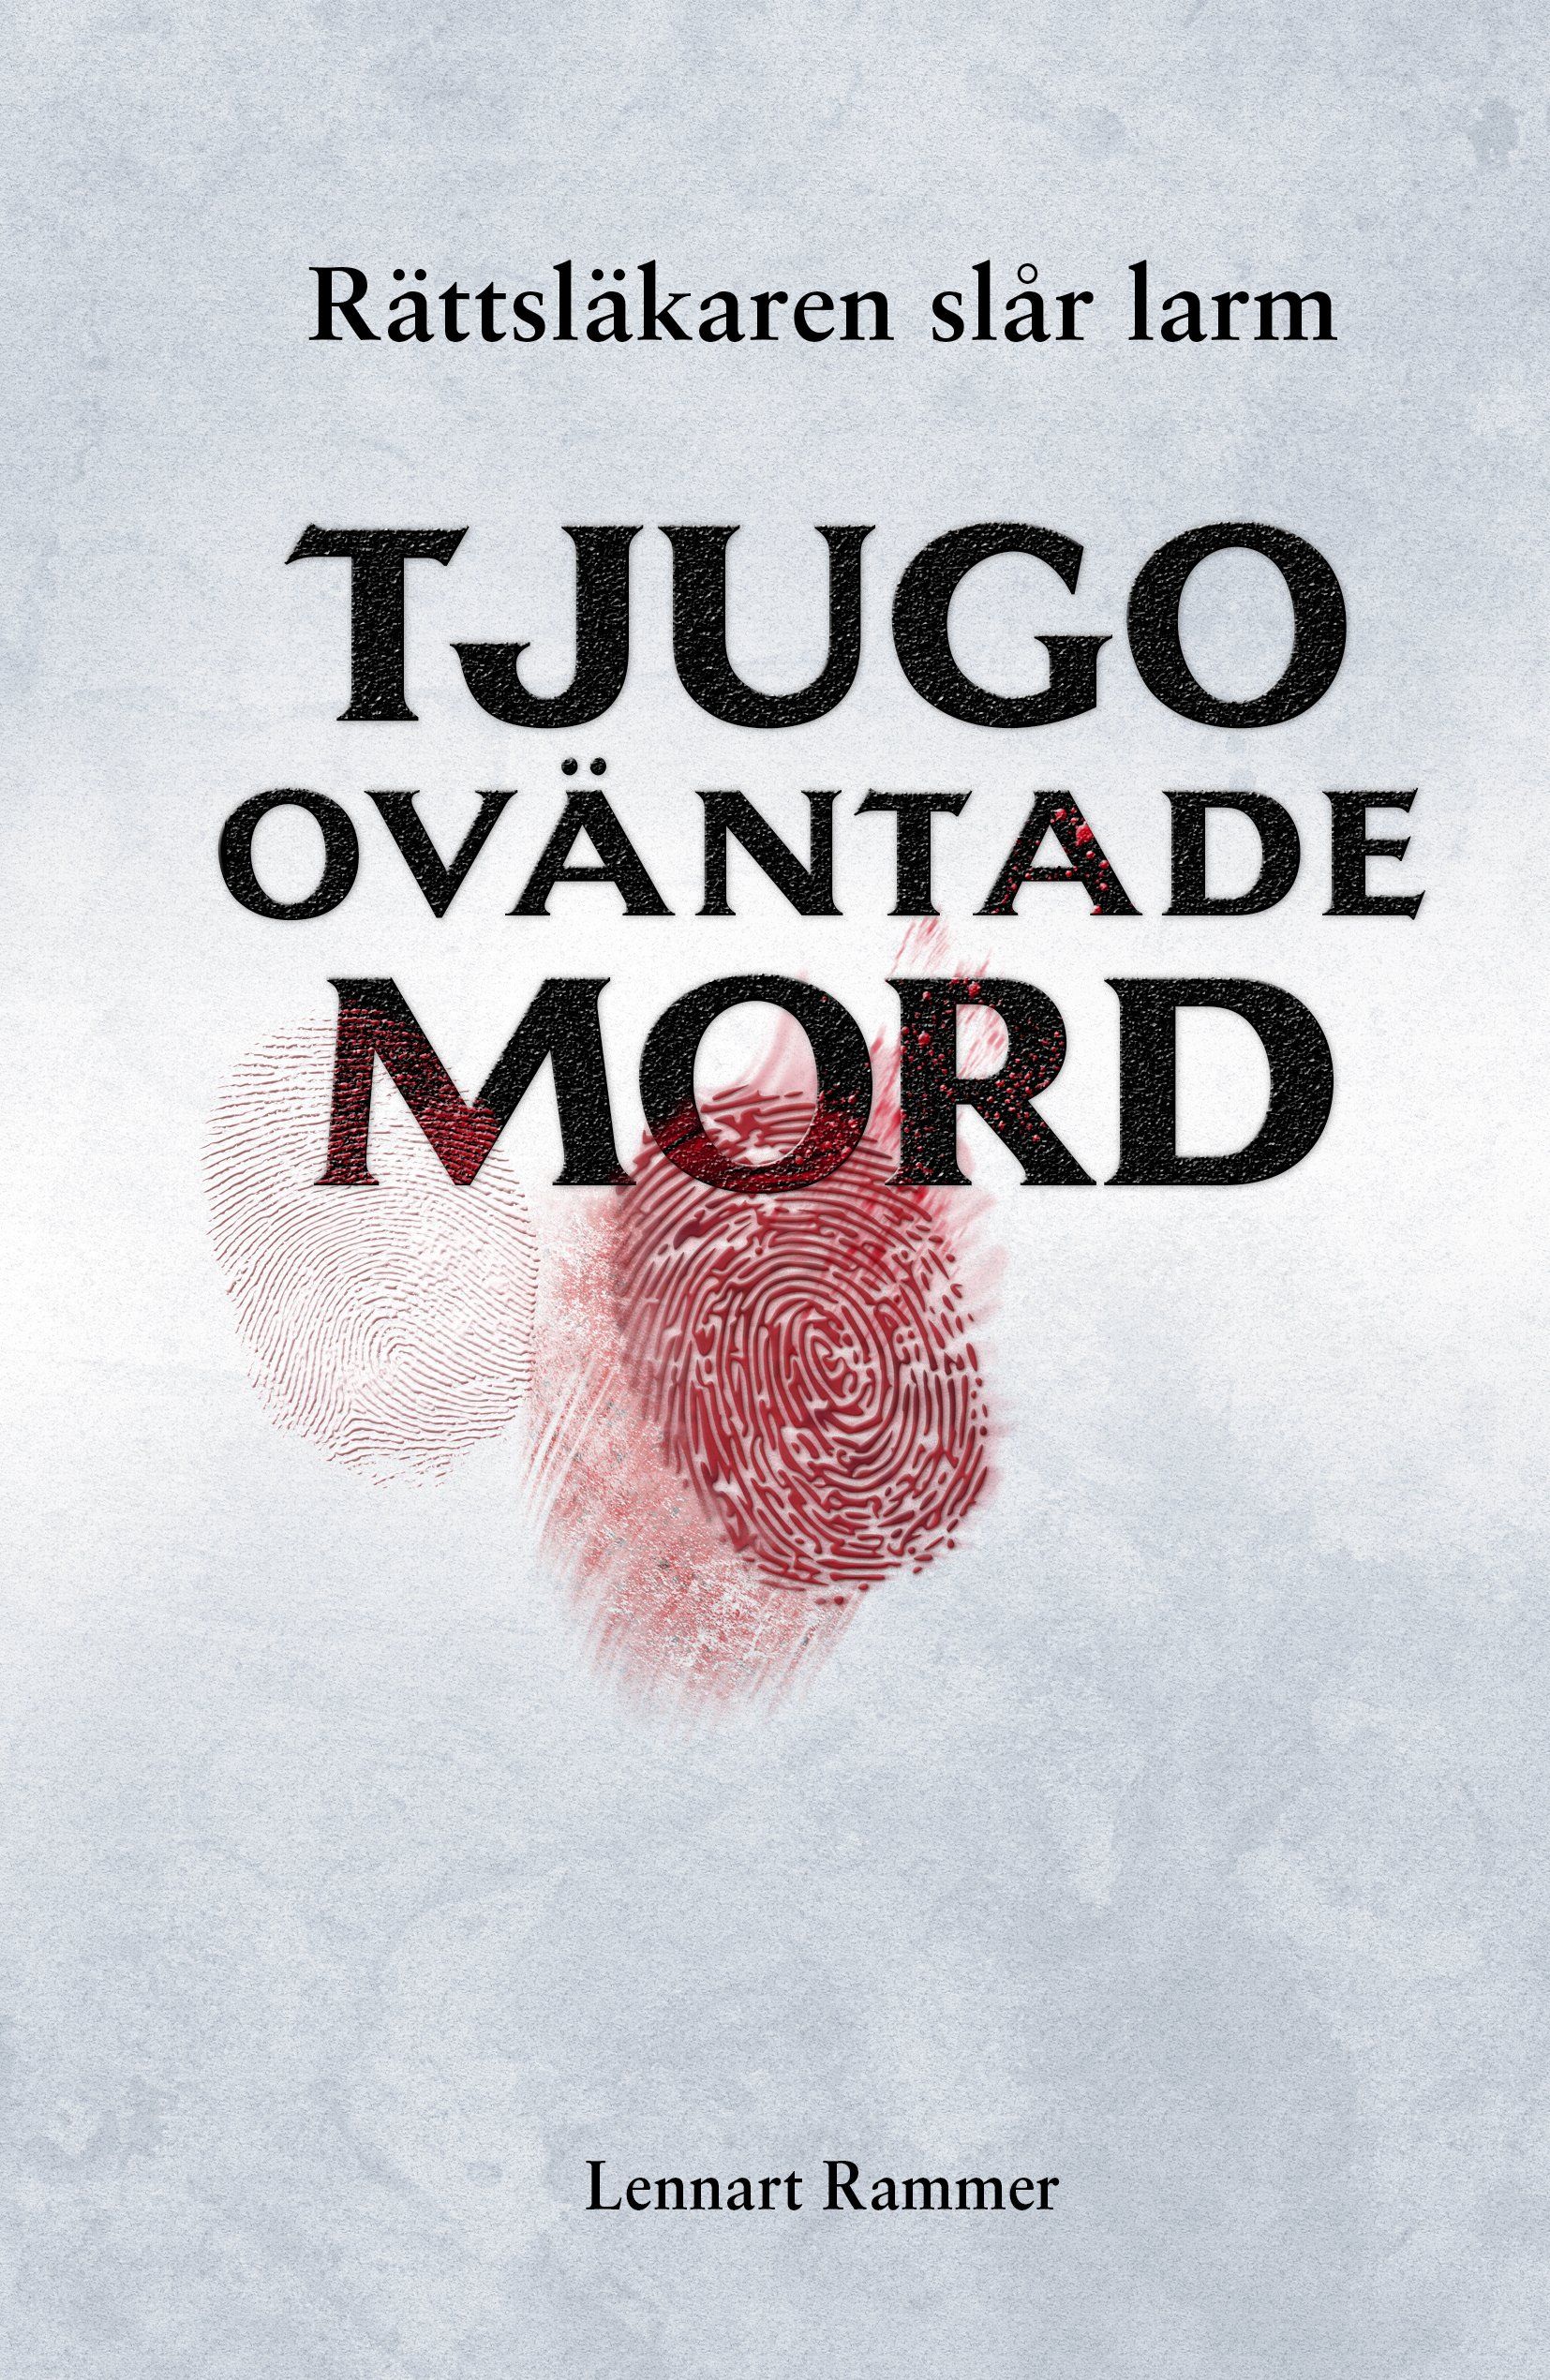 Boken Tjugo oväntade mord – rättsläkaren slår larm är skriven av Lennart Rammer på Stevali Bokförlag.